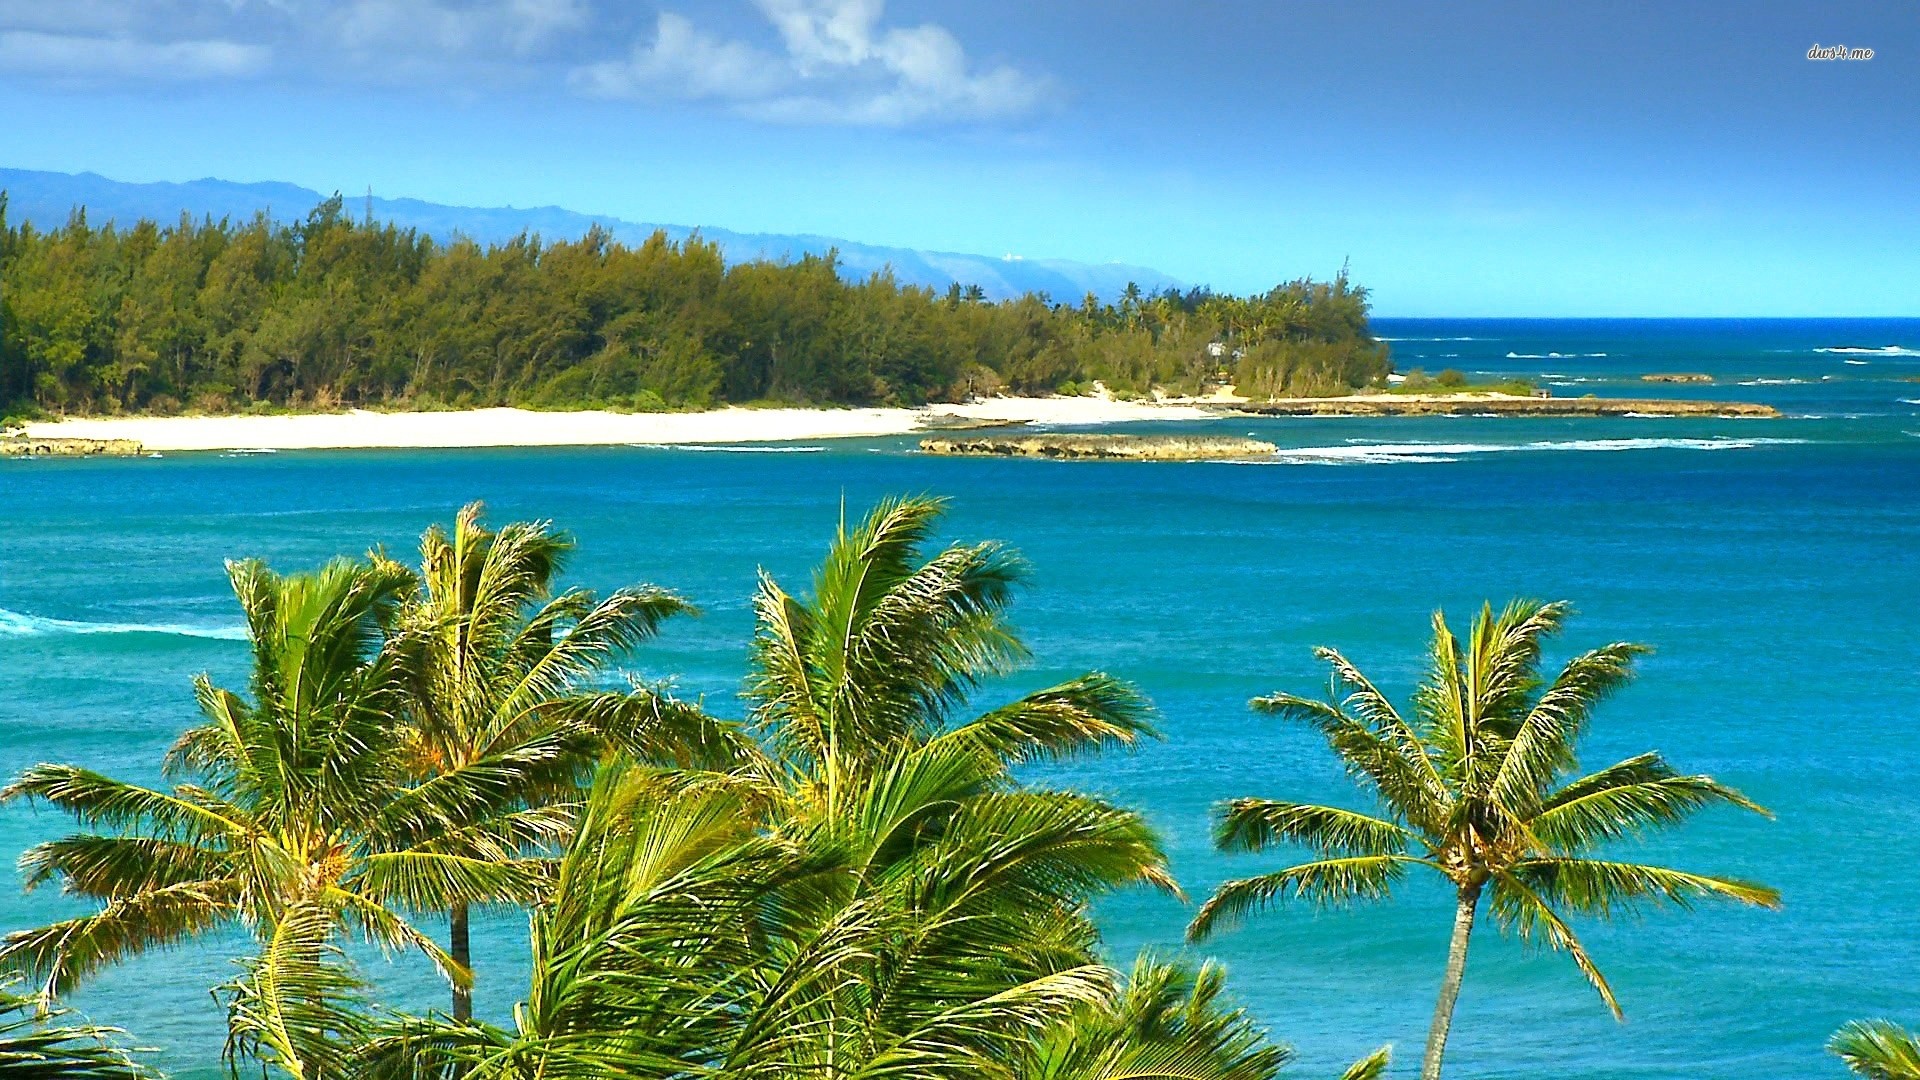 1920x1080 windy beach in hawaii | Desktop Backgrounds for Free HD Wallpaper .